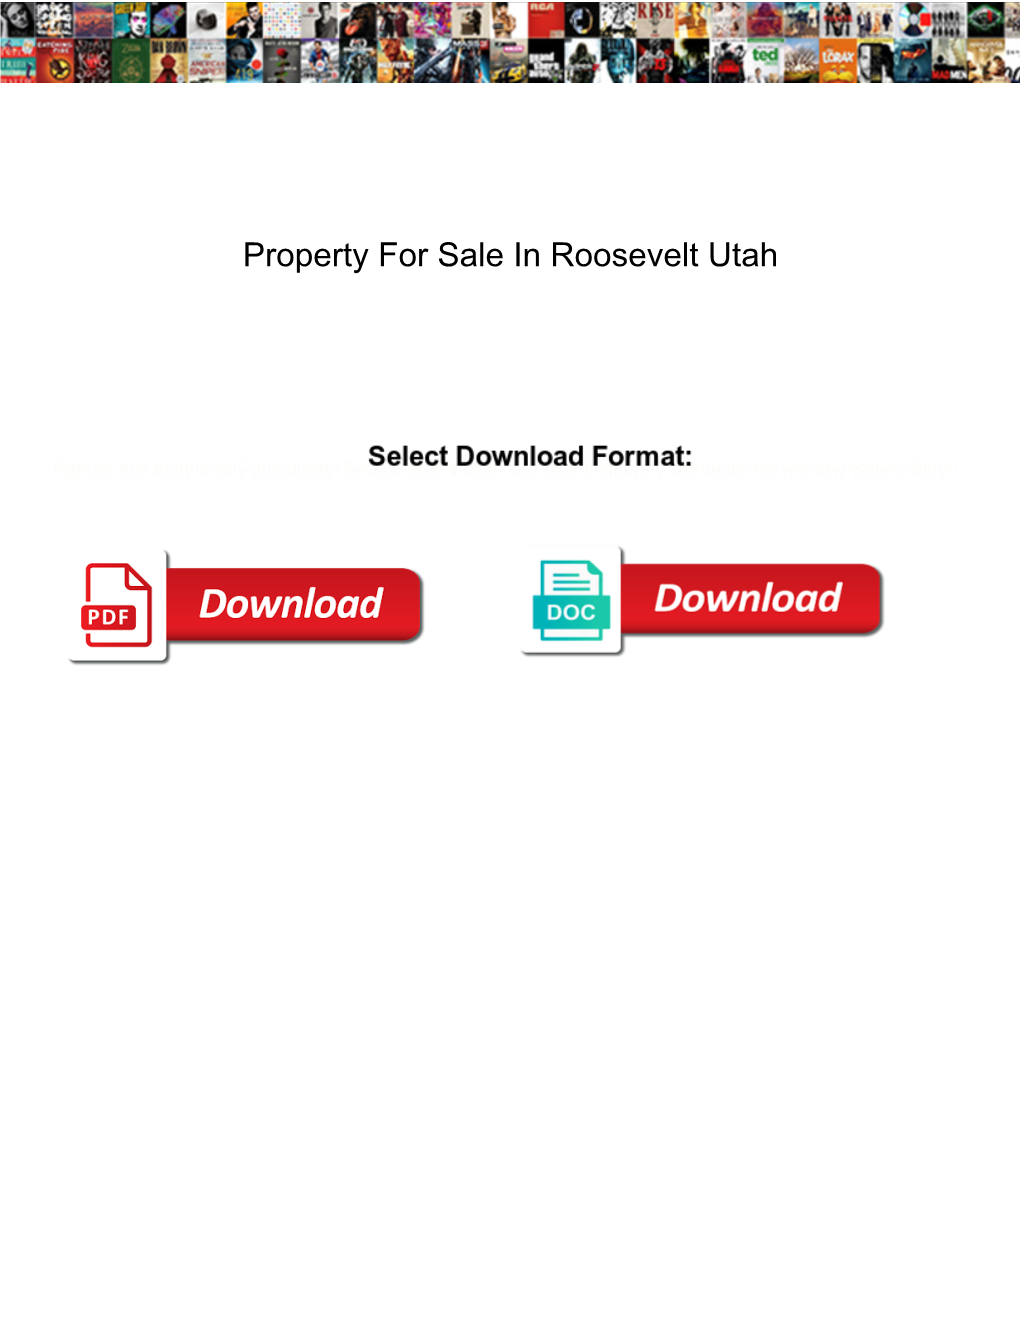 Property for Sale in Roosevelt Utah